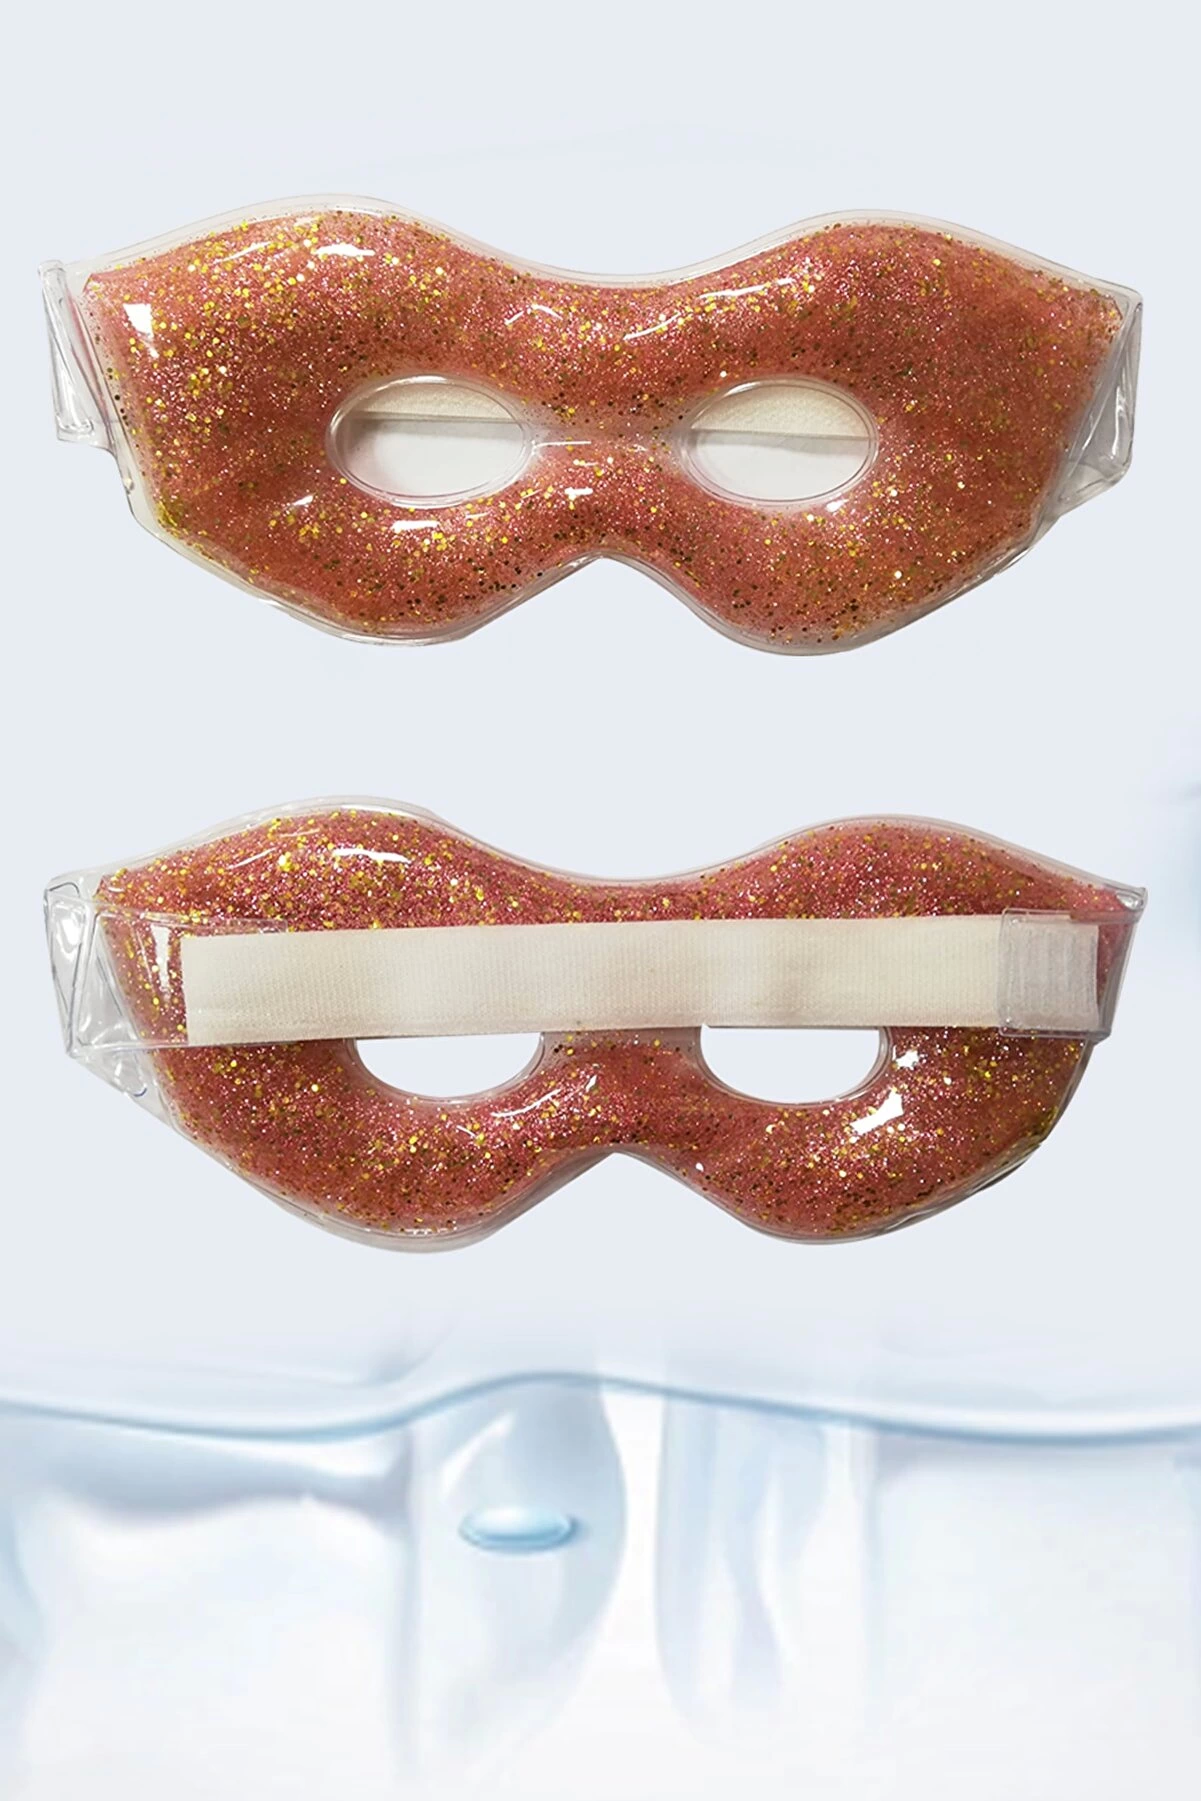 Simli Jel Göz Pedi Buz Maskesi Yorgunluk Giderici Soğutma Göz Bakımı Rahatlatıcı Uyku Maskesi ( Lisinya )